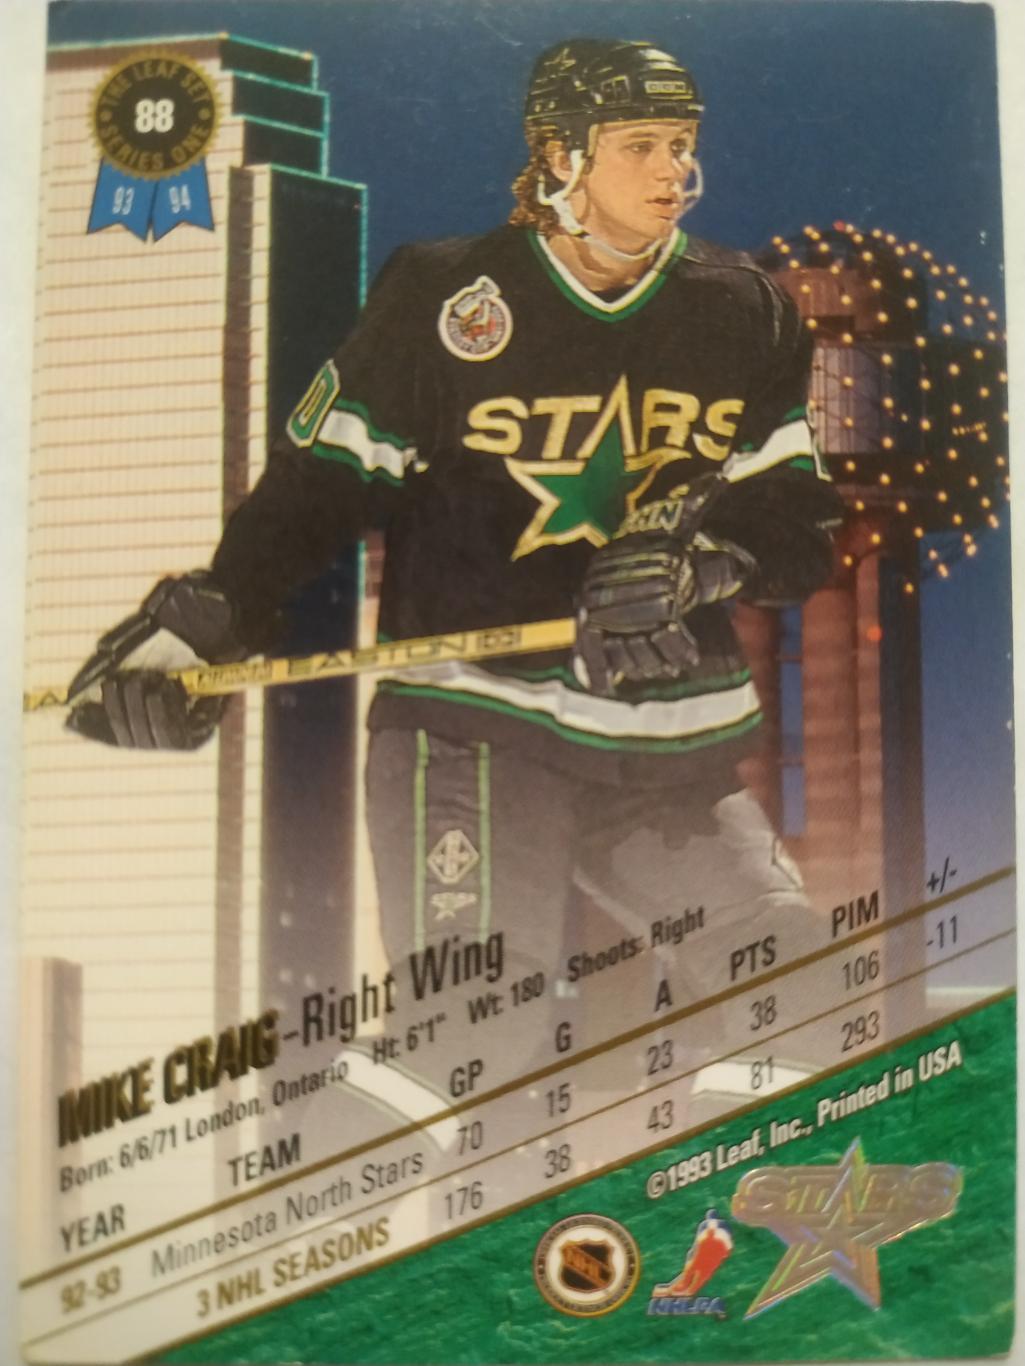 ХОККЕЙ КАРТОЧКА НХЛ LEAF SET SERIES ONE 1993-94 MIKE CRAIG DALLAS STARS #88 1